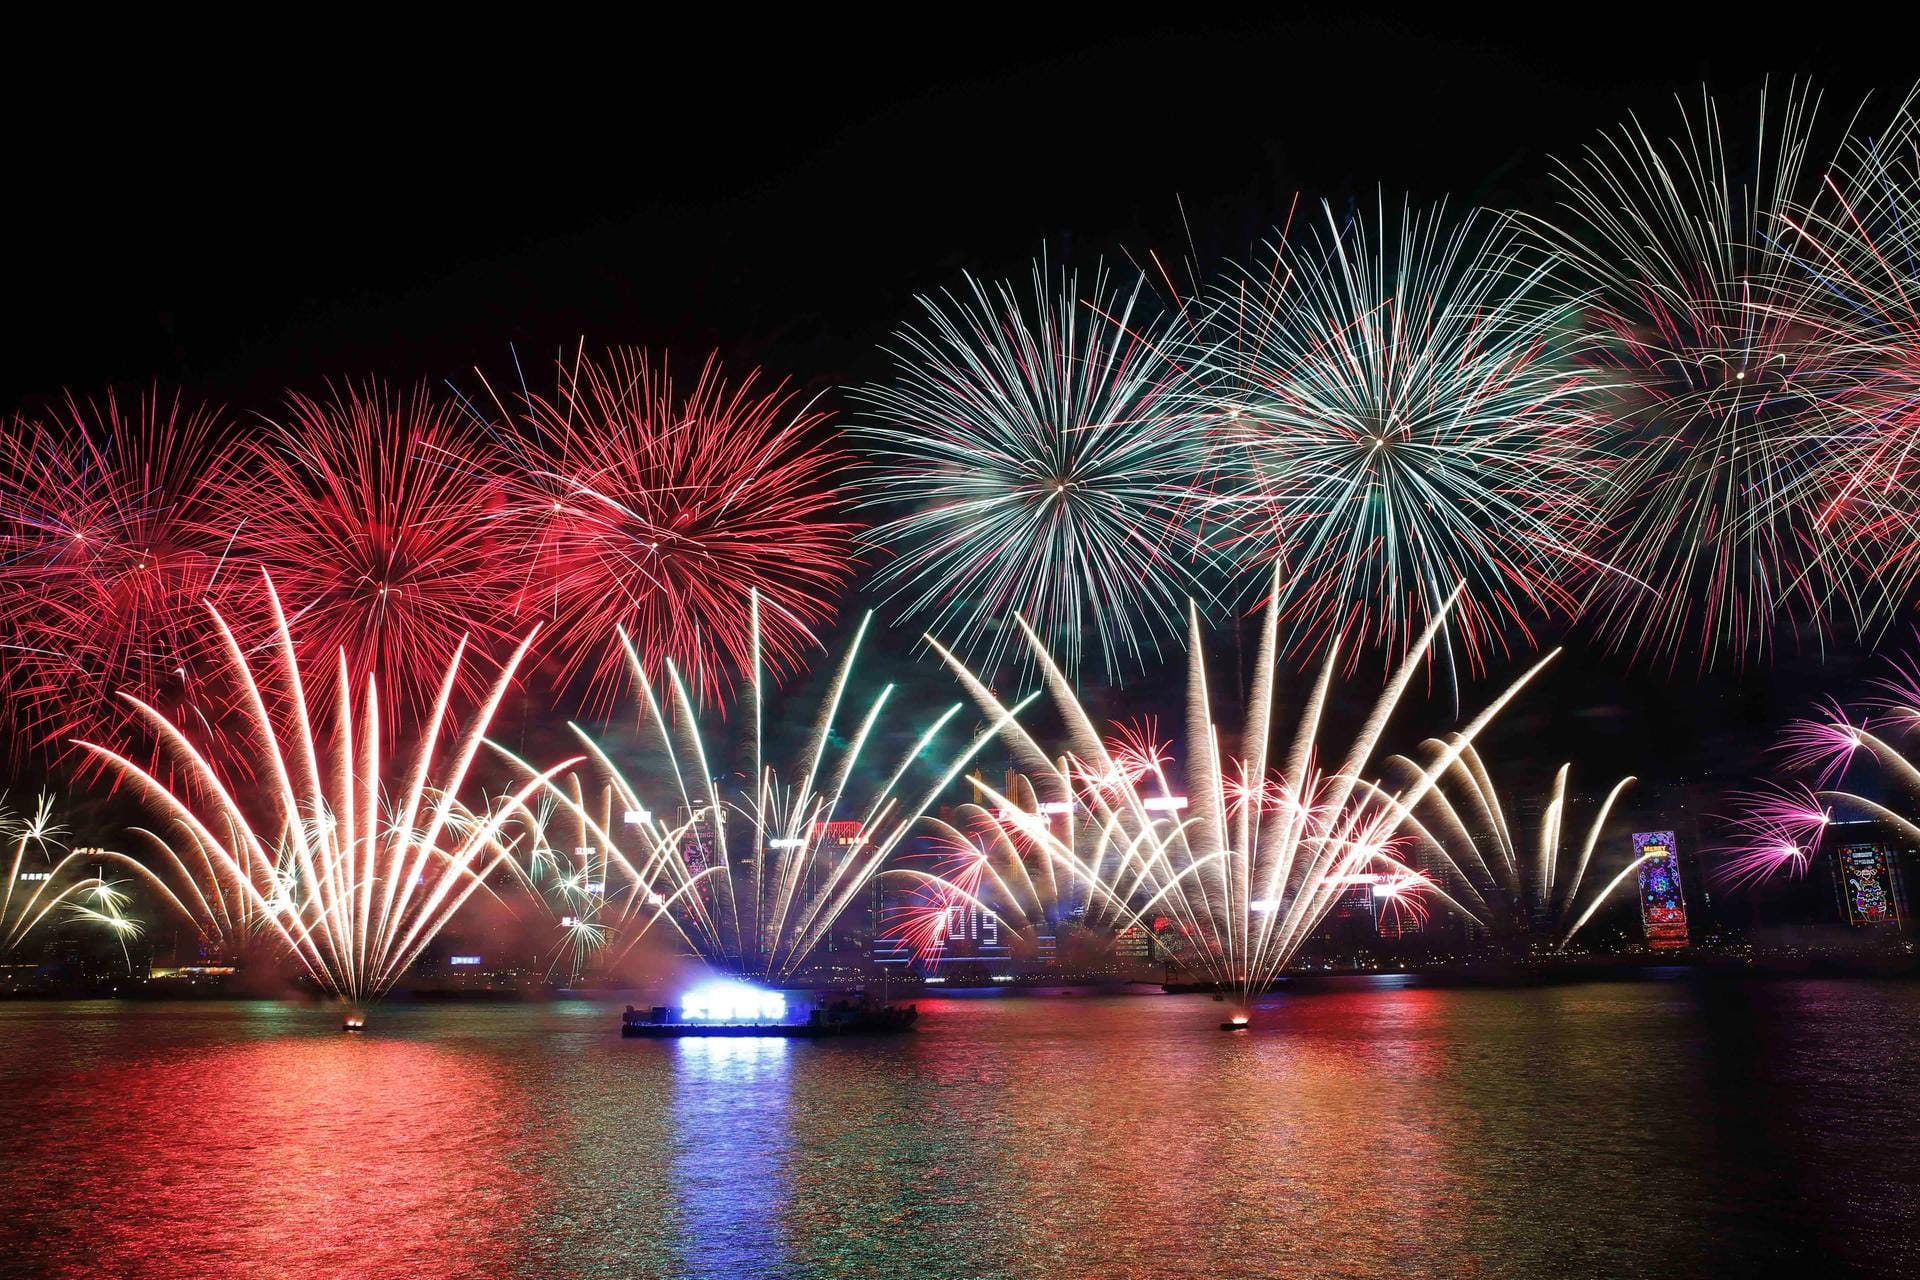 Feuerwerk zur Feier des neuen Jahres über dem Victoria-Hafen in Hongkong.